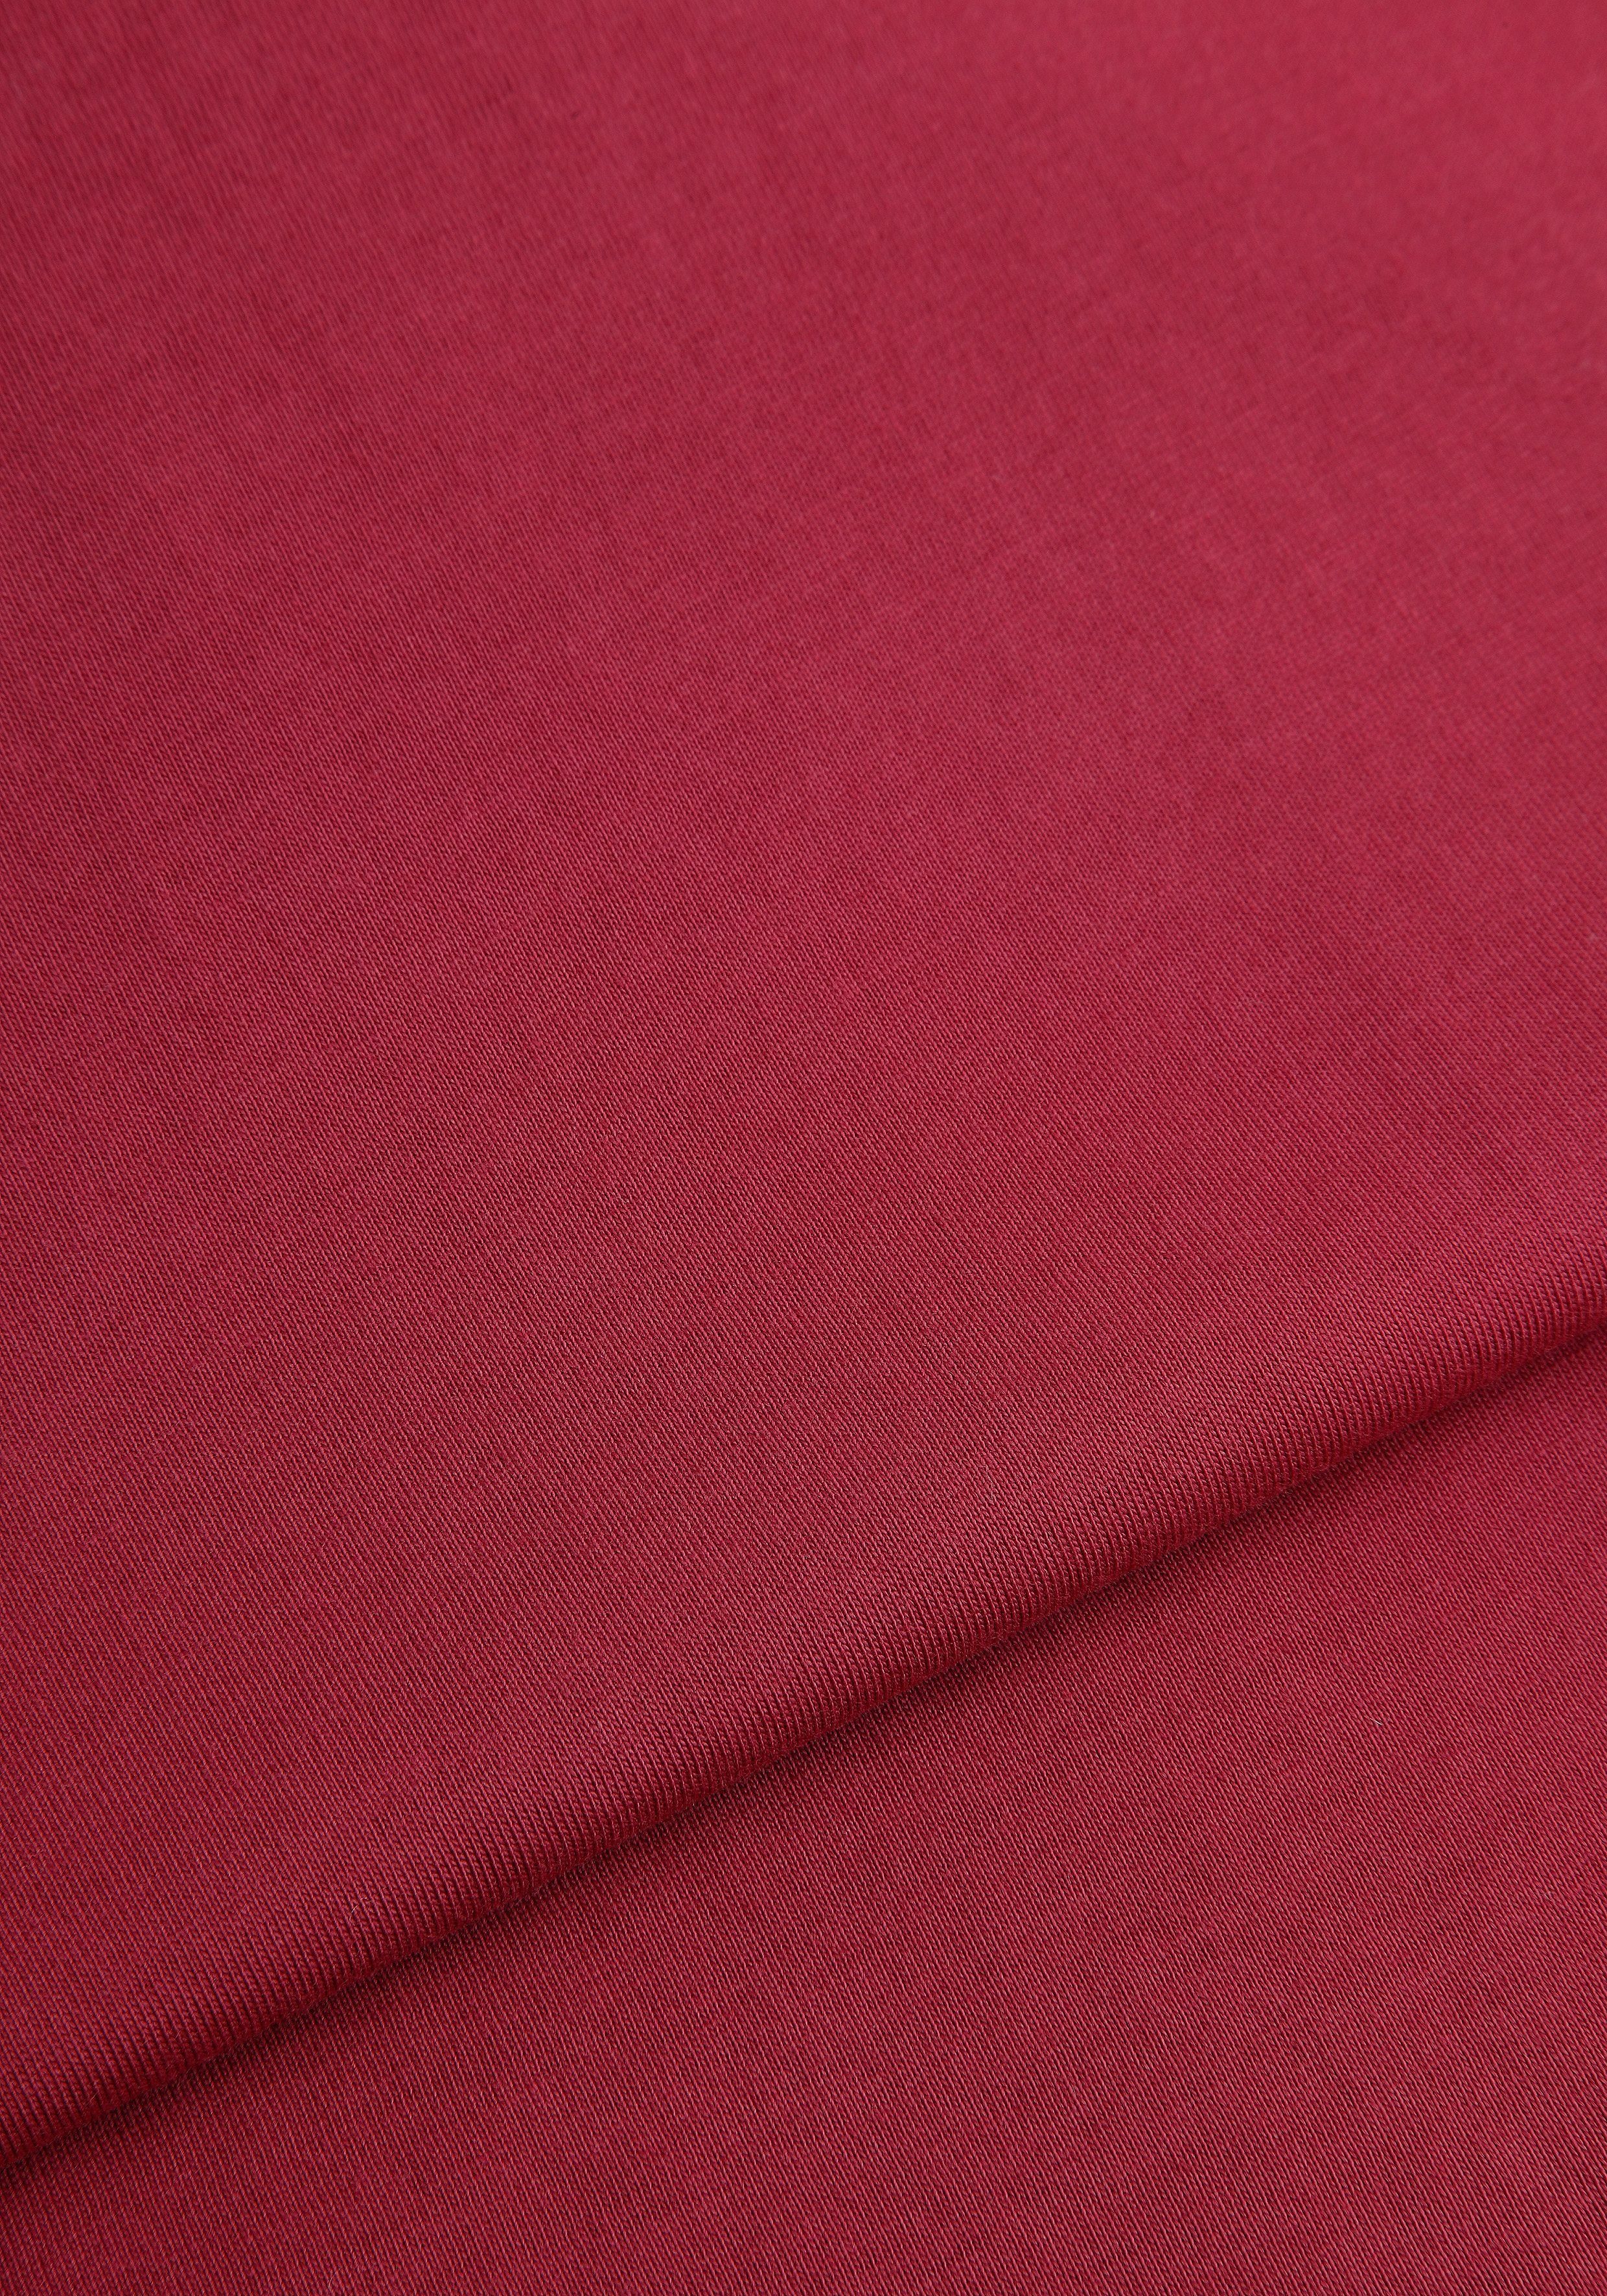 Unterzieh- rot, perfekt Man's 3er-Pack) 3-tlg., als T-Shirt grau-meliert World (Packung, marine, T-shirt